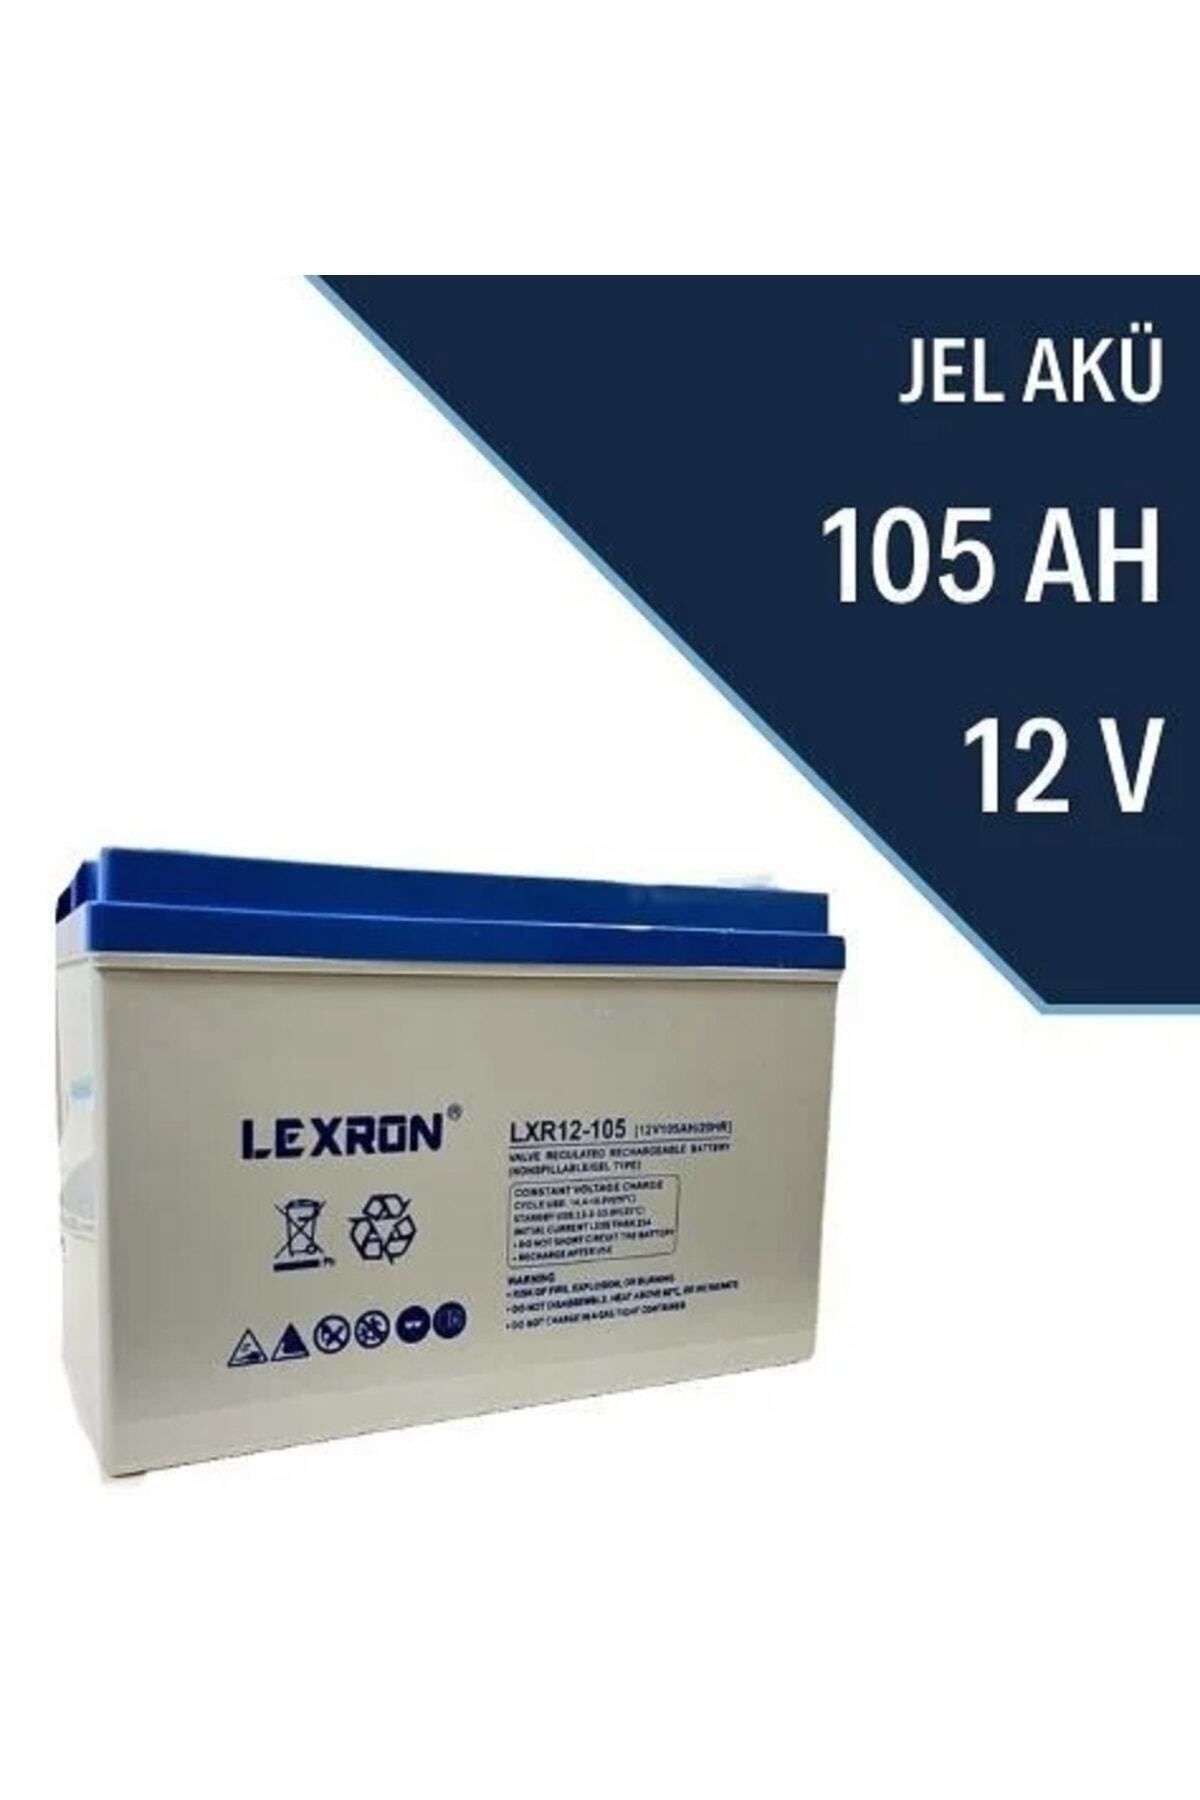 Lexron 105 Amper 12 Volt Jel Akü - 105 Ah Jel Akü - 1 Adet